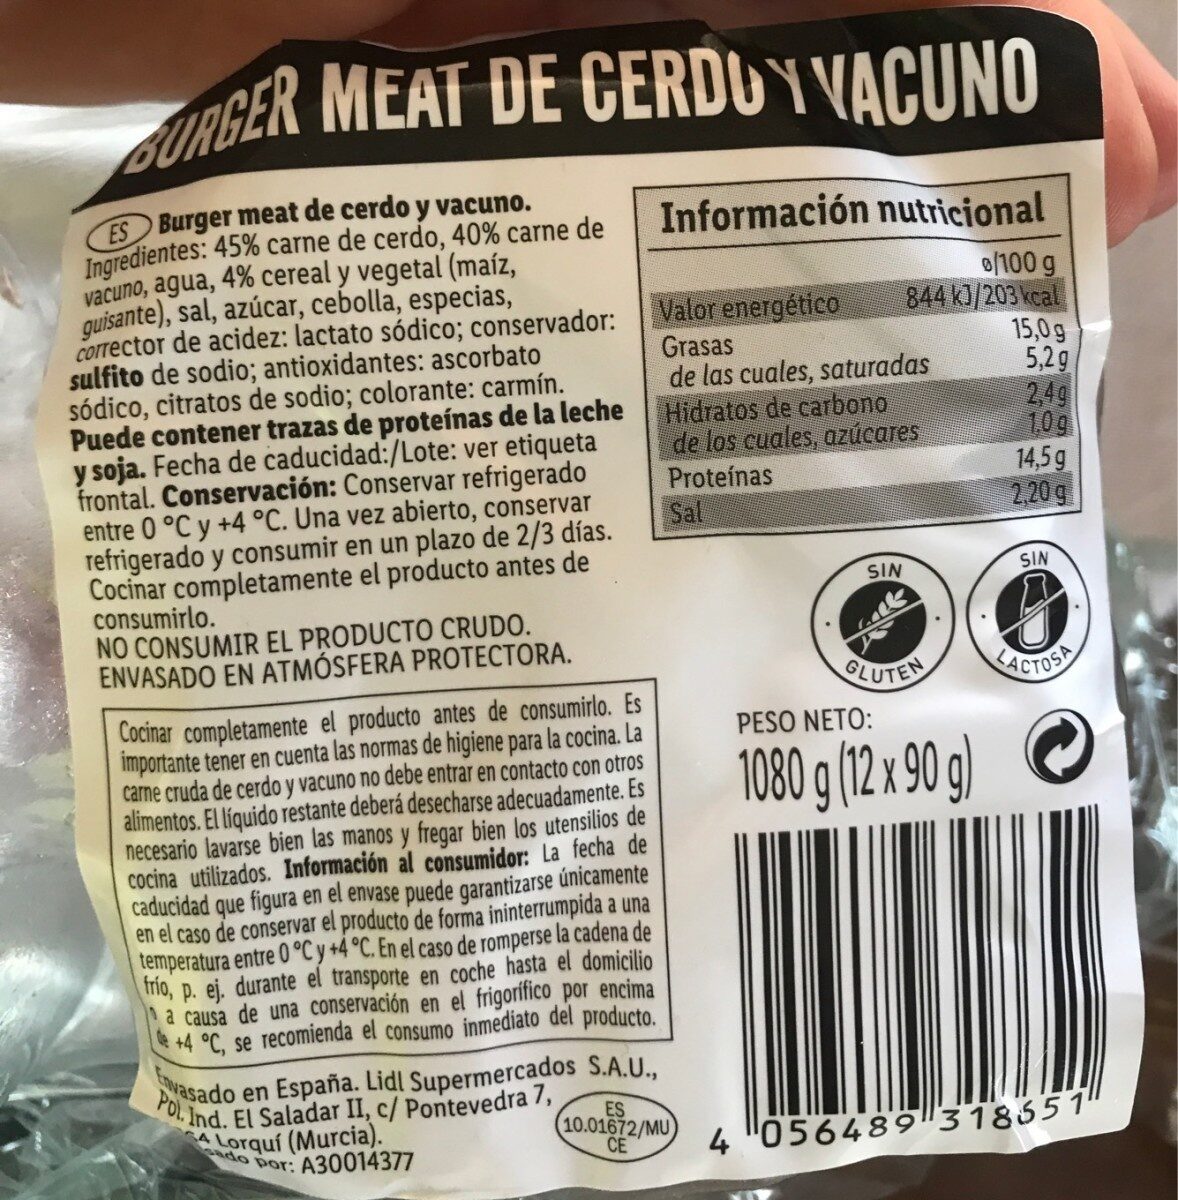 Burger meat de cerdo y vacuno - Nutrition facts - es